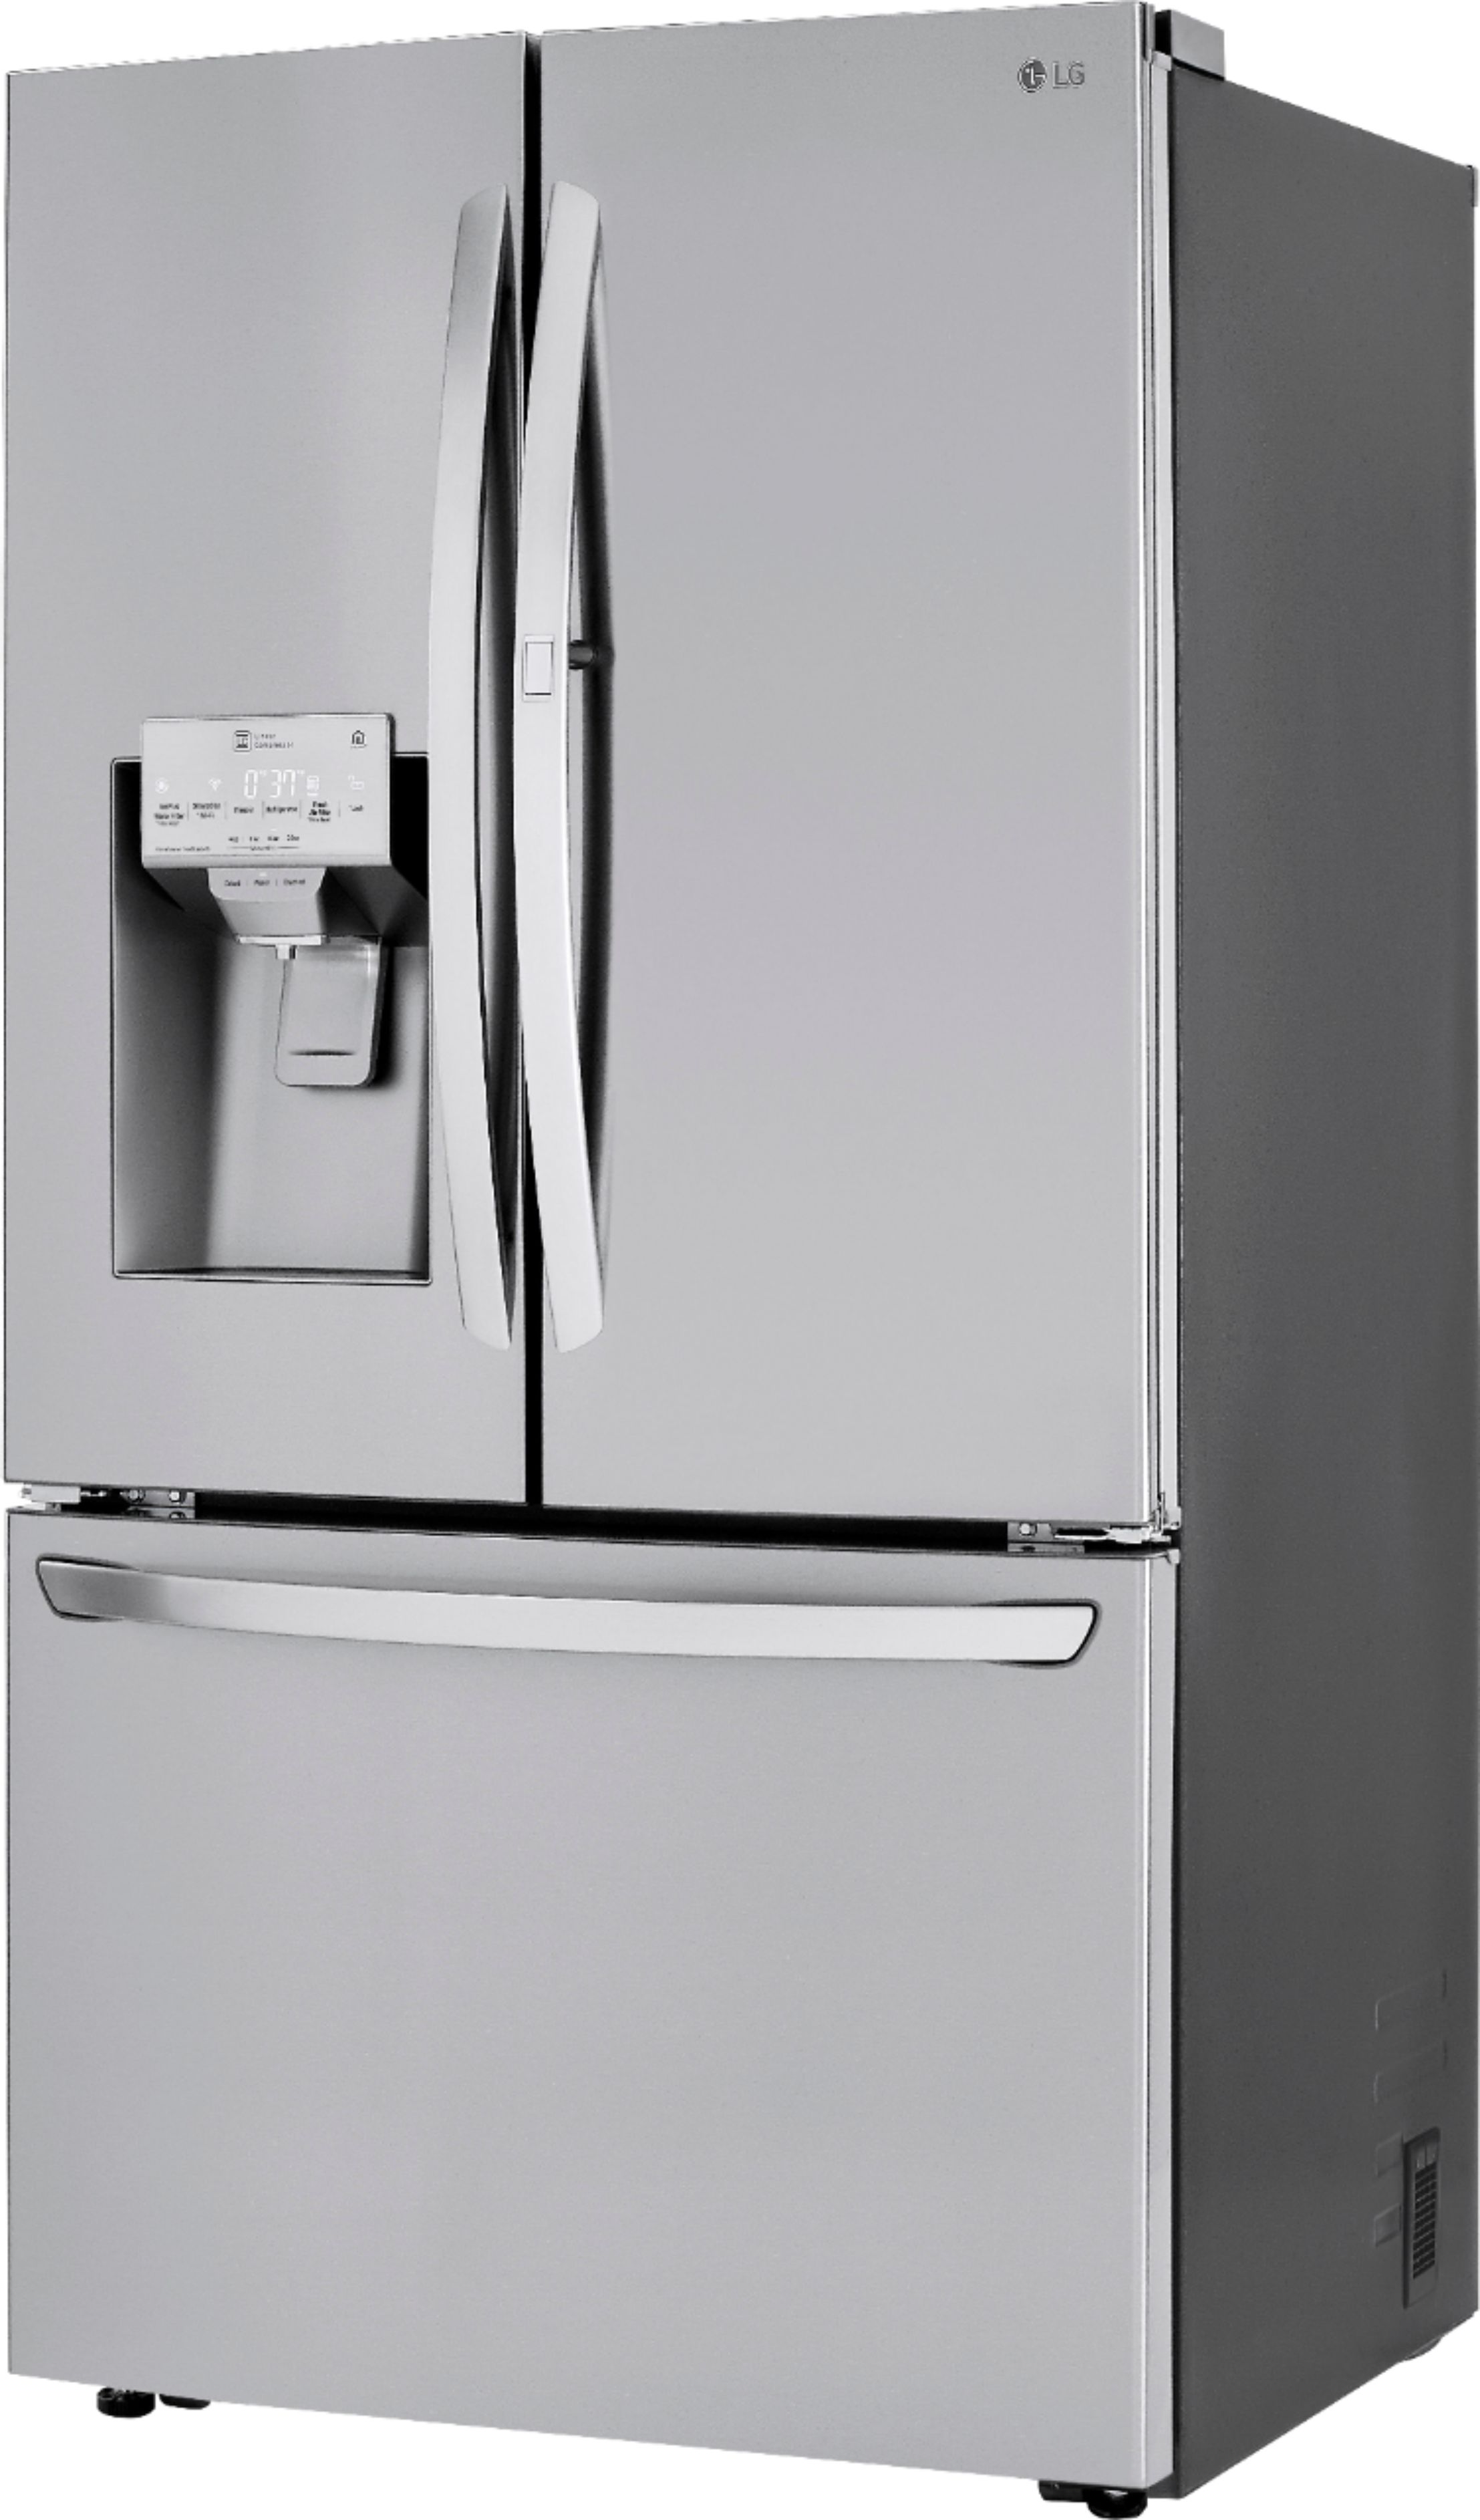 Best Buy: LG 29.7 Cu. Ft. French Door-in-Door Refrigerator Stainless ...